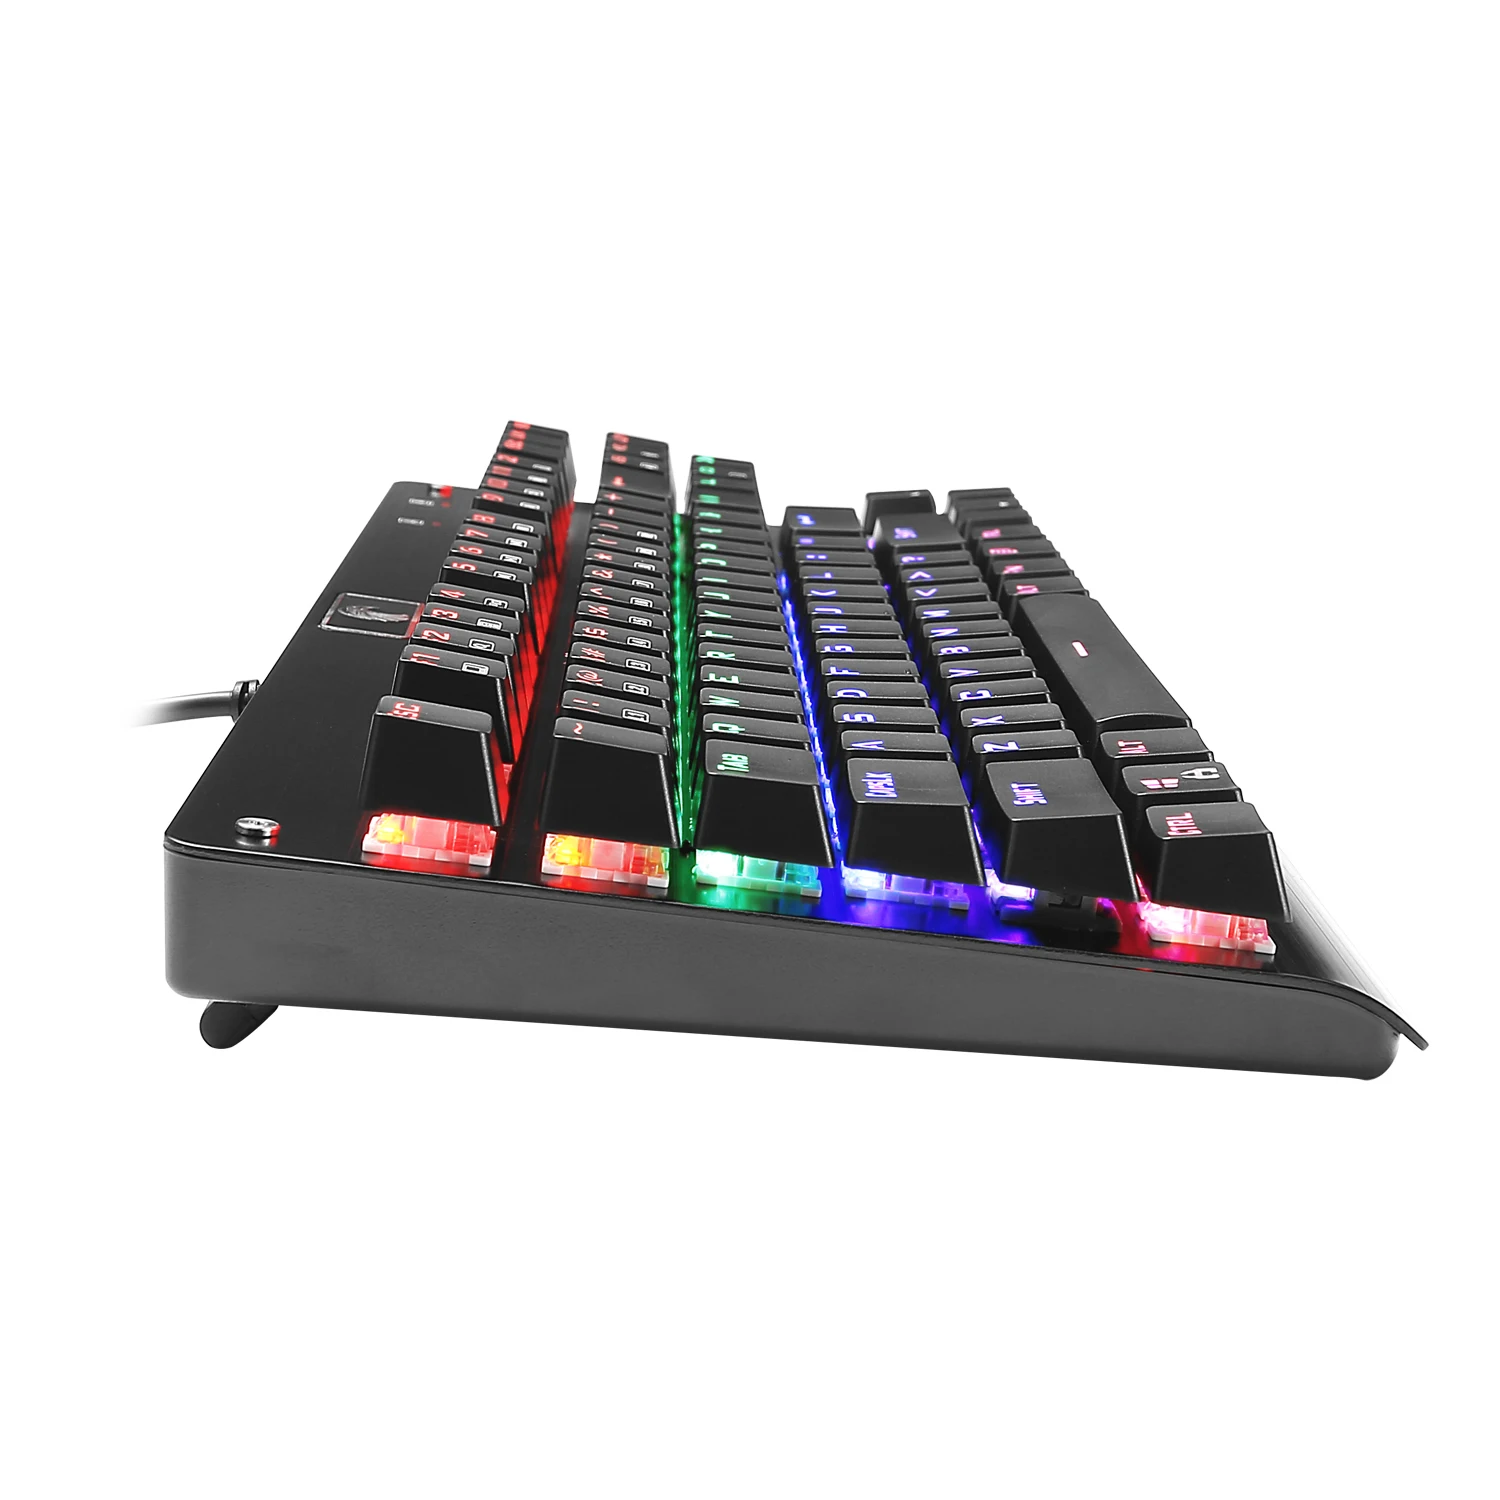 Z77 Eagle игровая клавиатура без ключа Механическая Outemu переключатель светодиодный подсветка 87 ключ алюминиевая клавиатура для геймера Typist